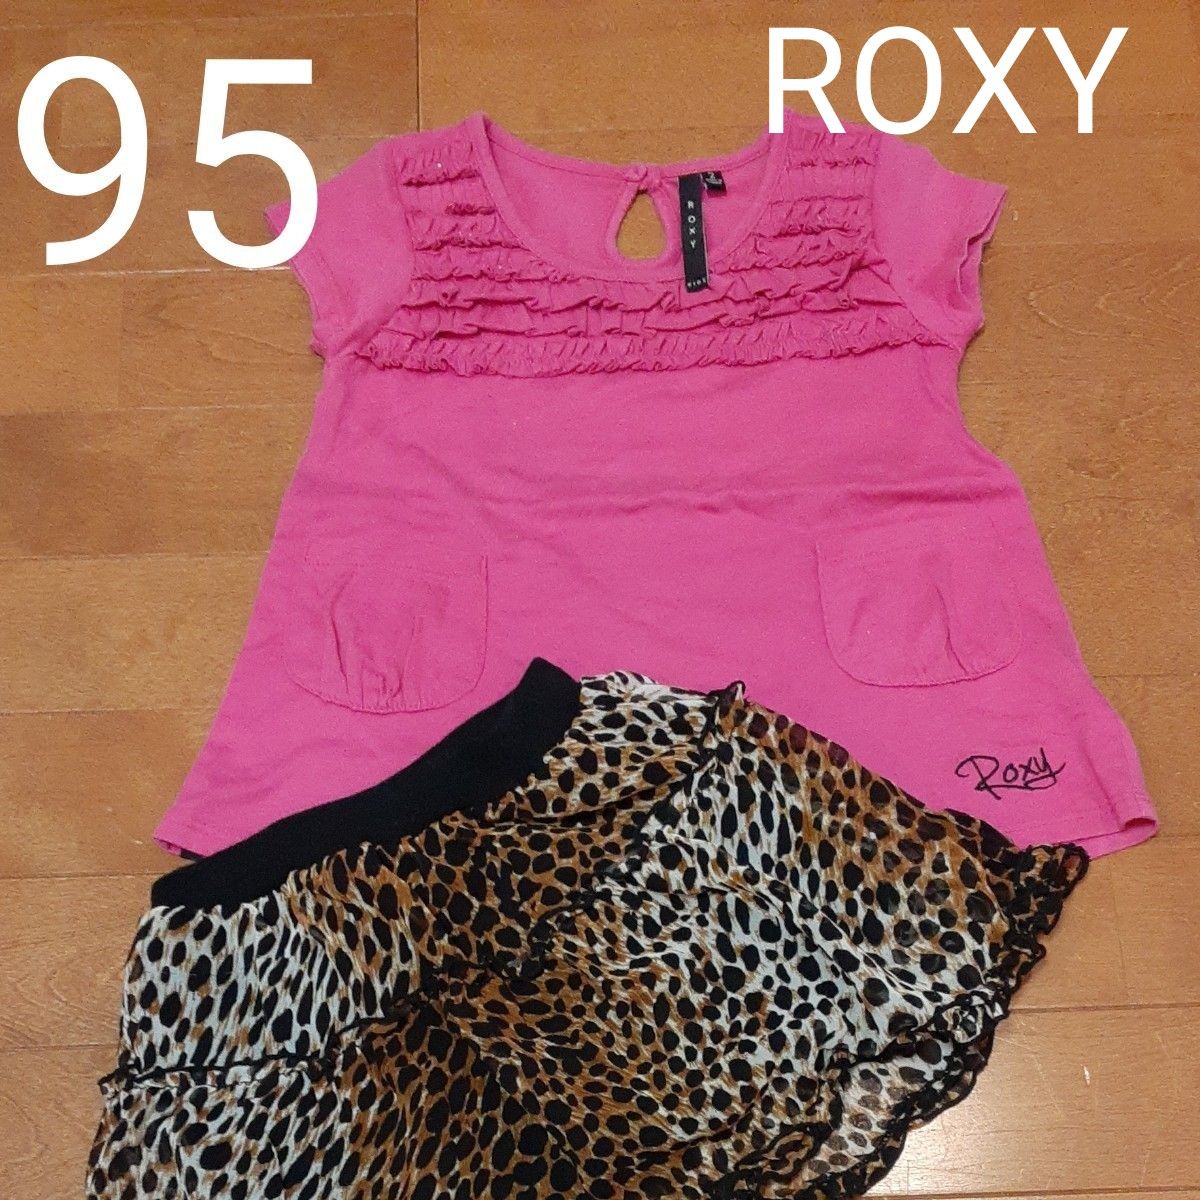 ROXY チュニックサイズ2 & フレアミニスカート 95 レパード  女の子 半袖